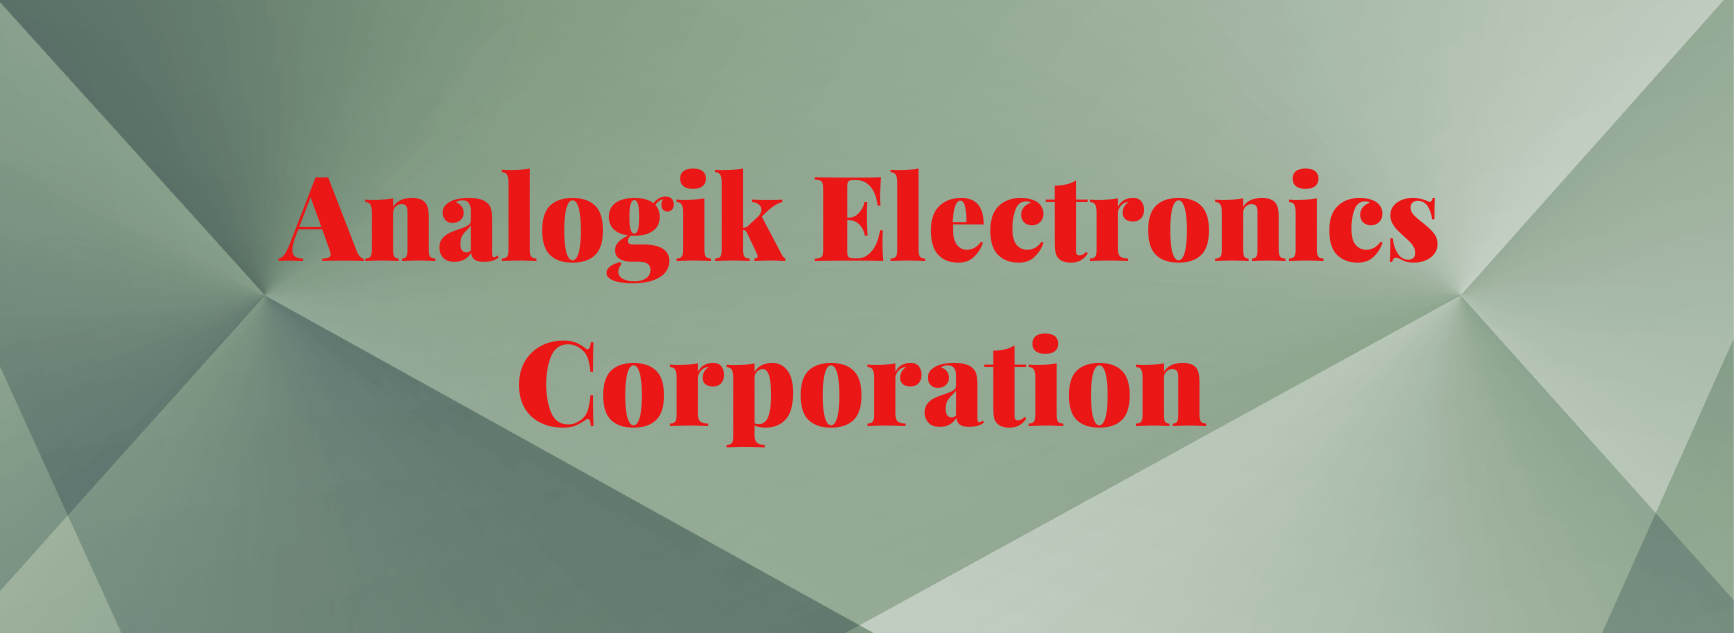 Analogik Electronics Corporation.